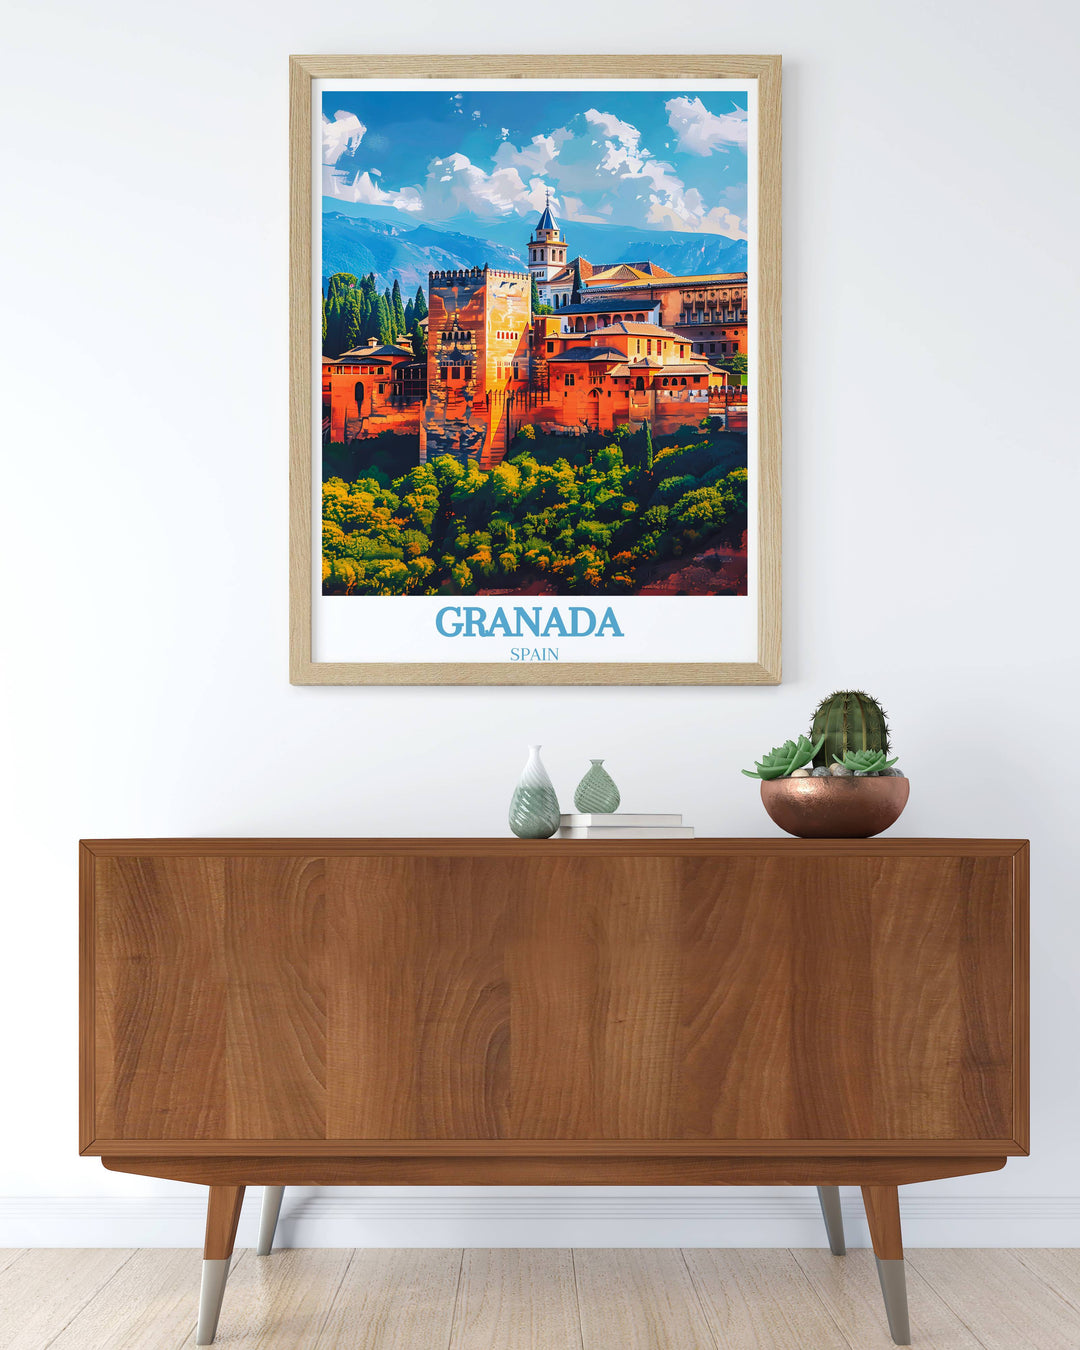 Explore the charm of Granada through our exquisite Granada Artwork, each piece capturing the city's unique allure.